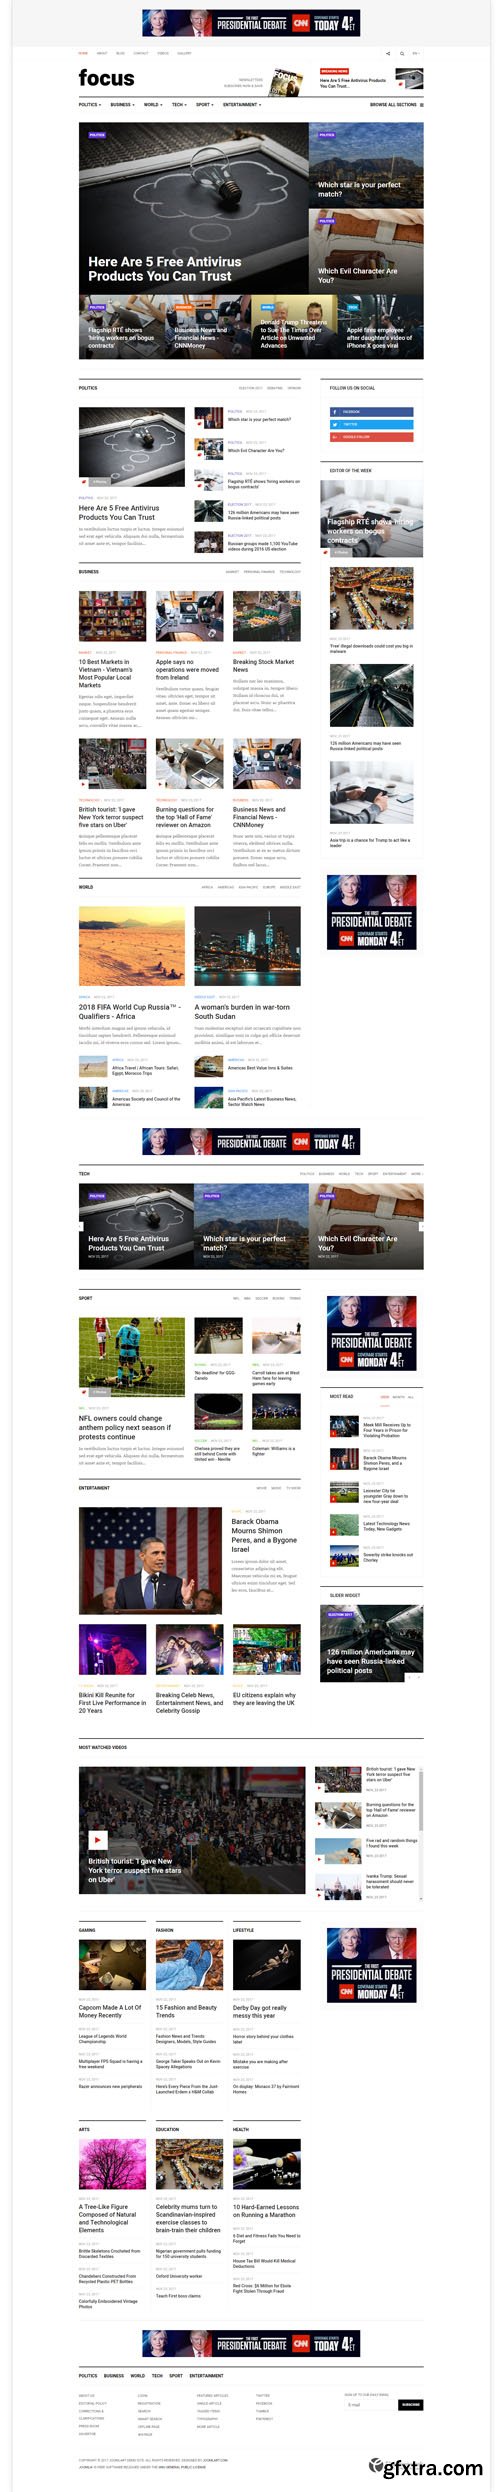 JoomlArt - JA Focus v1.0.1 - Best Joomla Template for News and Magazine websites